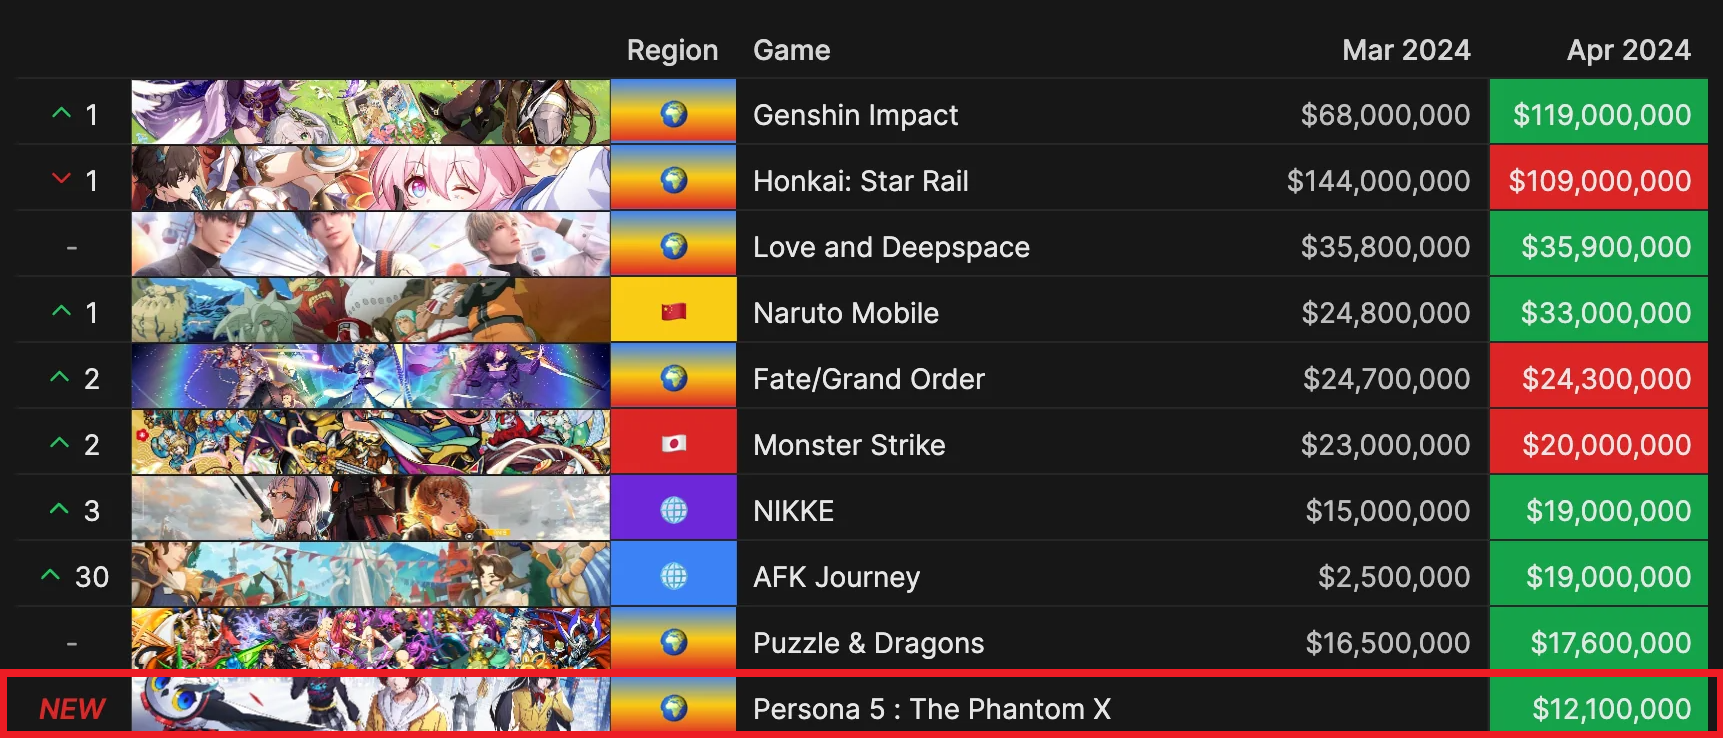 Ngà ngửa với thời gian mà Persona 5: The Phantom X sẽ được phát hành toàn cầu